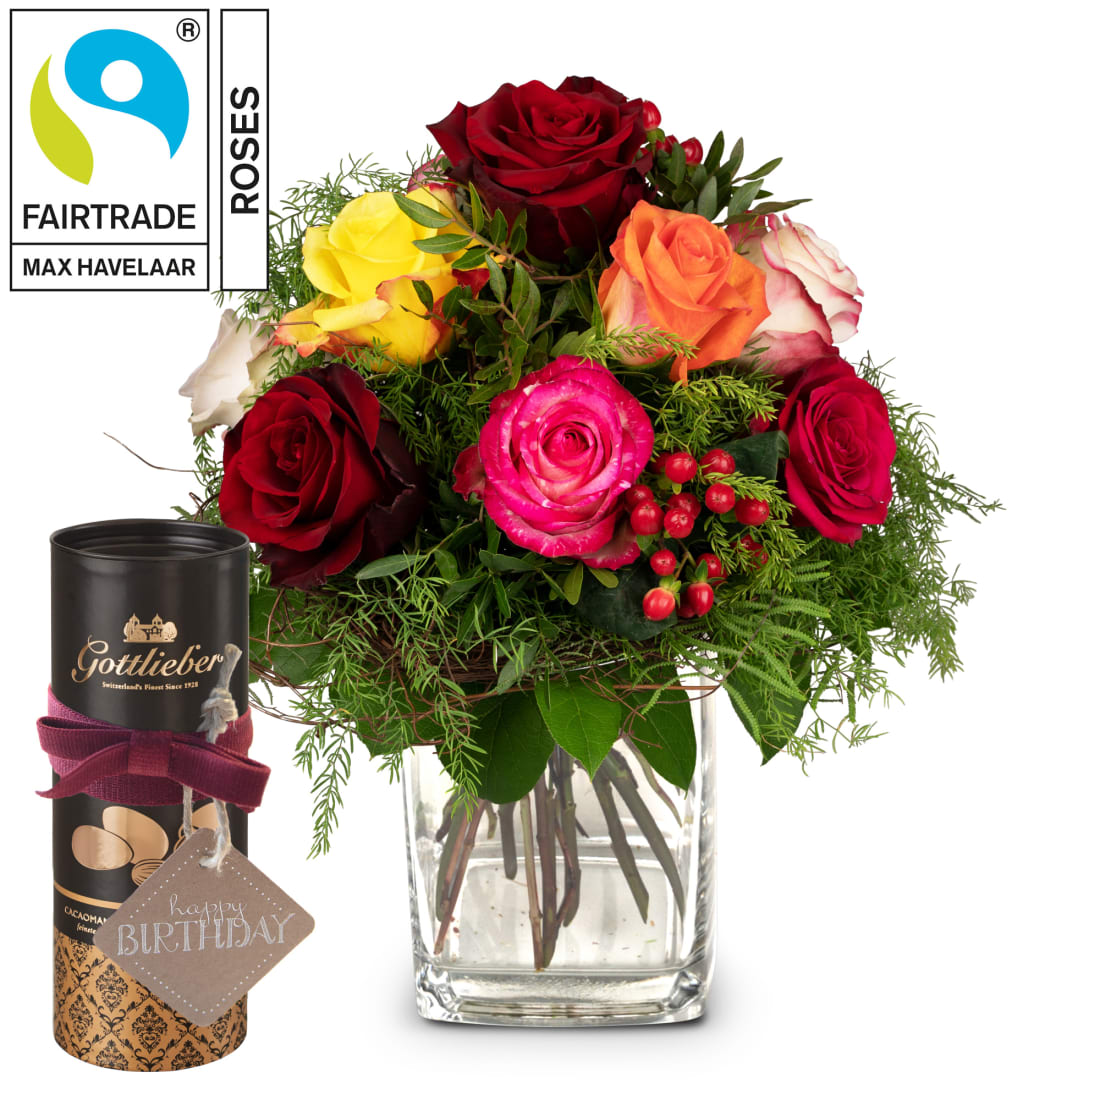 Magie de roses avec roses Fairtrade Max Havelaar avec amandes au cacao  Gottlieber et étiquette à suspendre «Happy Birthday» - commander ici -  livraison encore aujourd'hui